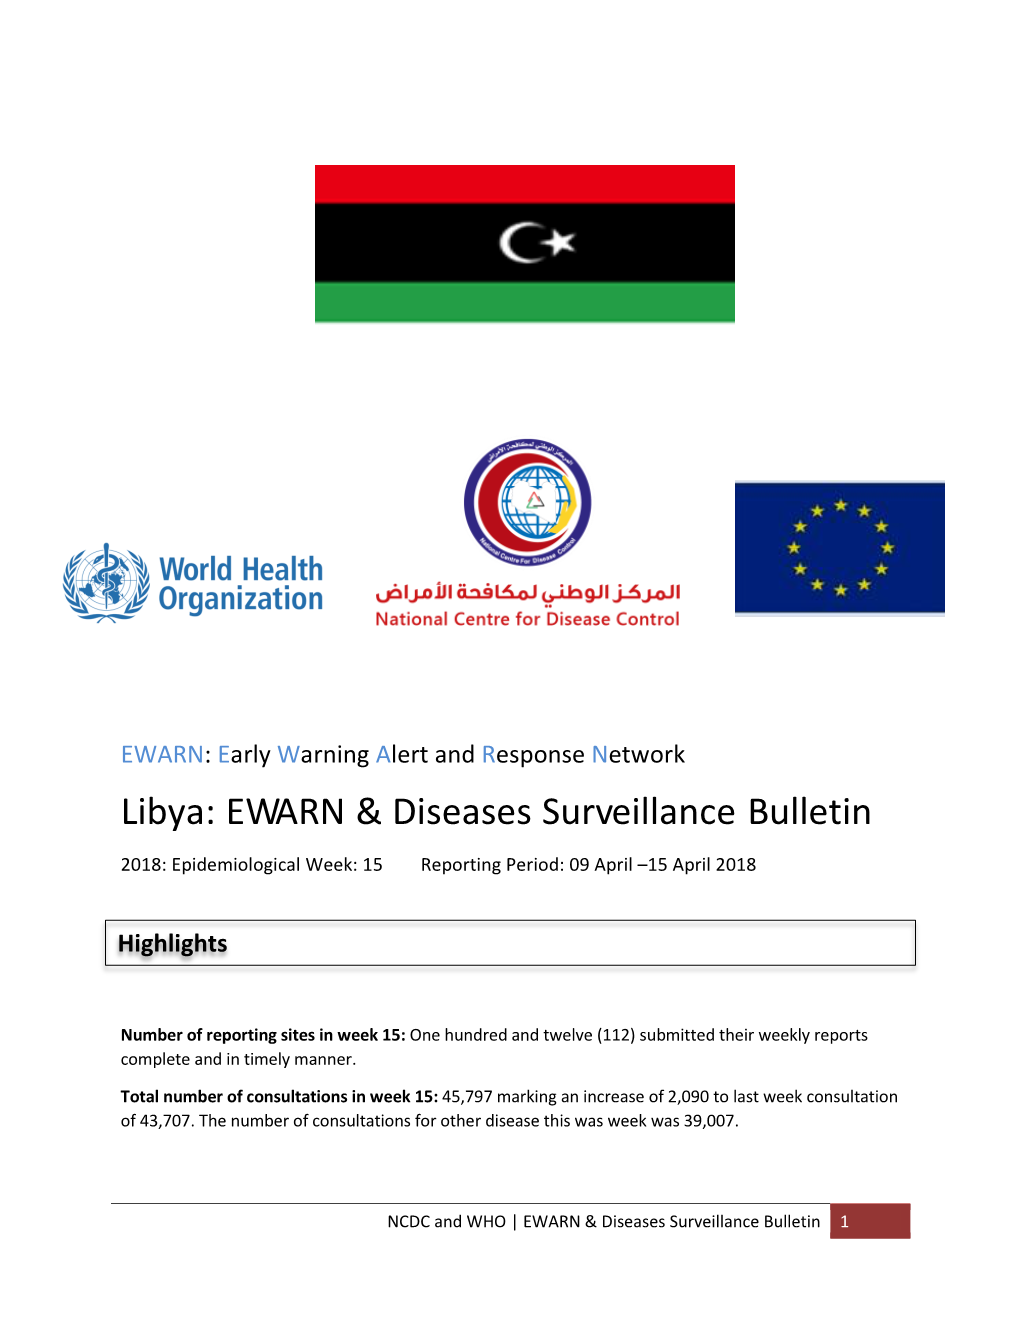 Libya: EWARN & Diseases Surveillance Bulletin